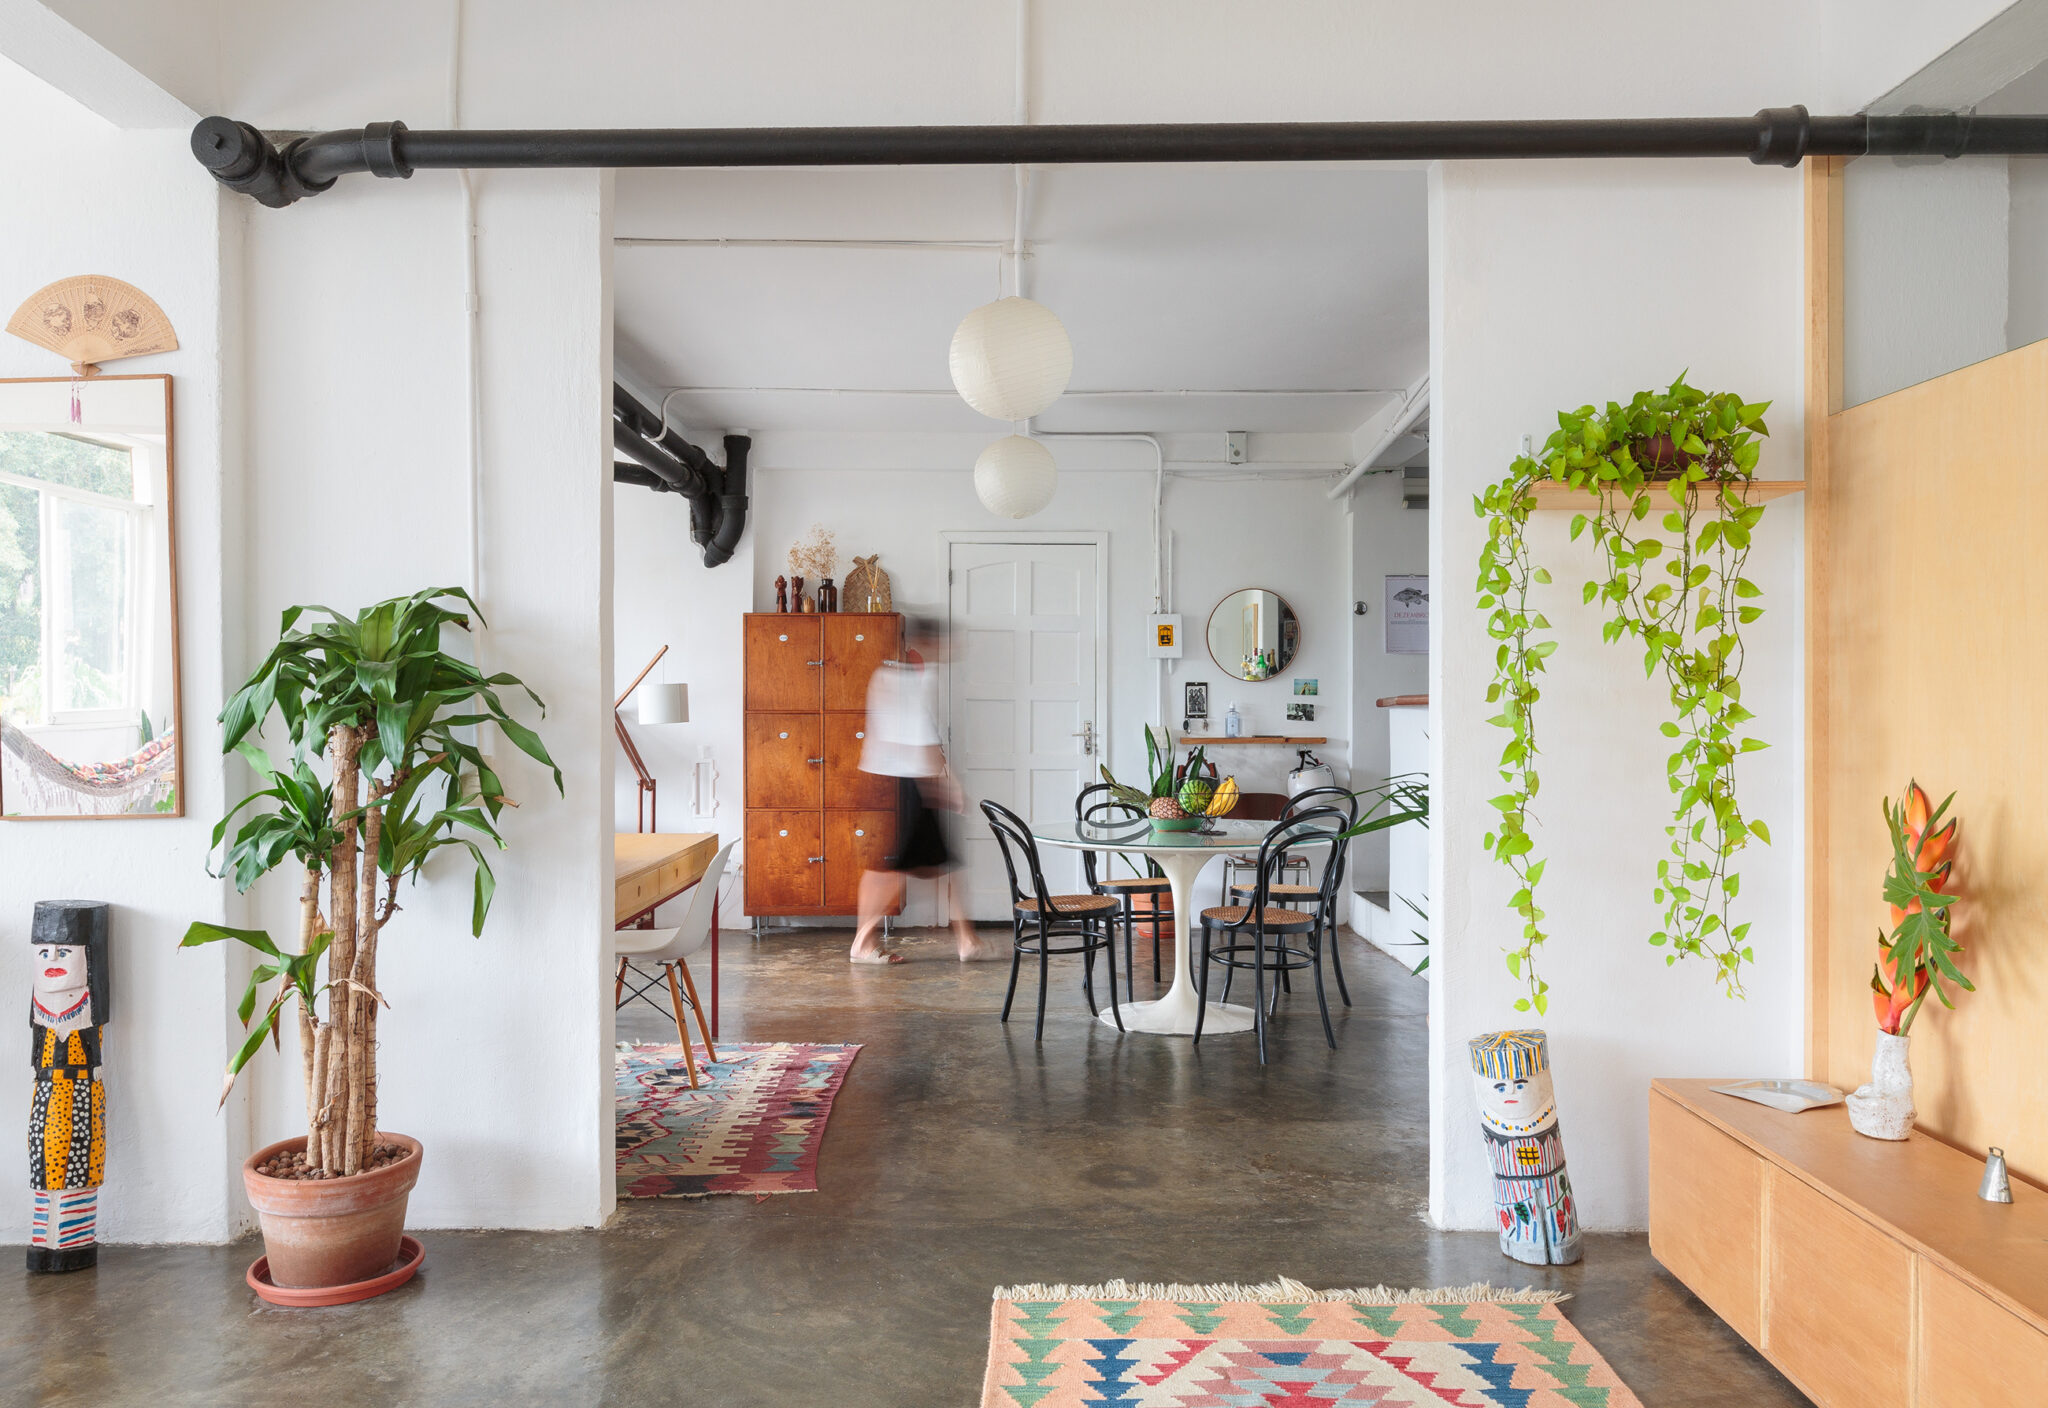 Apartamento pequeno tem boas soluções e decoração escandinava - Casa e  Jardim